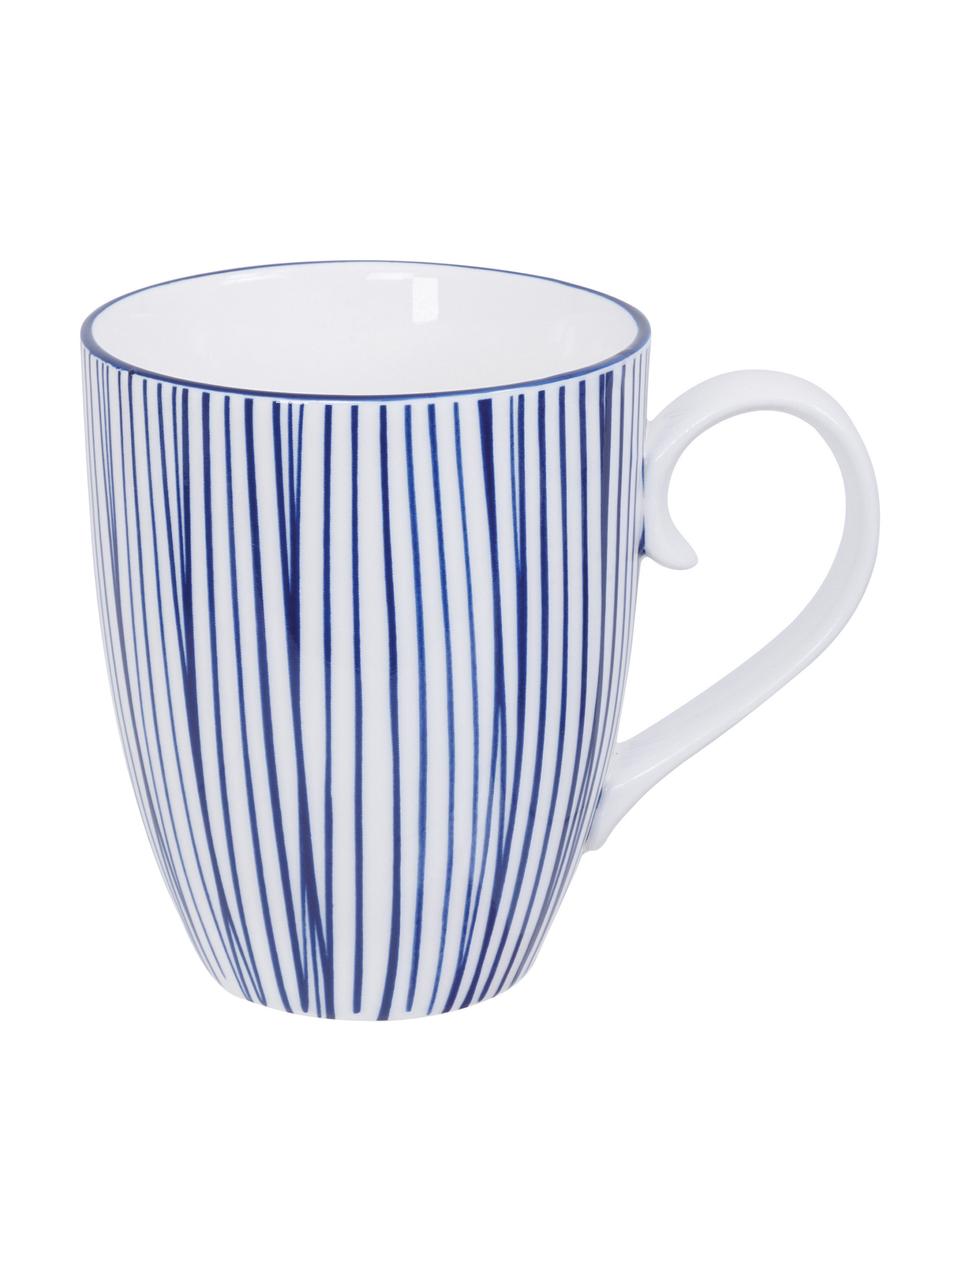 Handgemachte Porzellan-Tassen Nippon, 4-er Set, Porzellan, Blau, Weiss, Ø 9 x H 10 cm, 380 ml